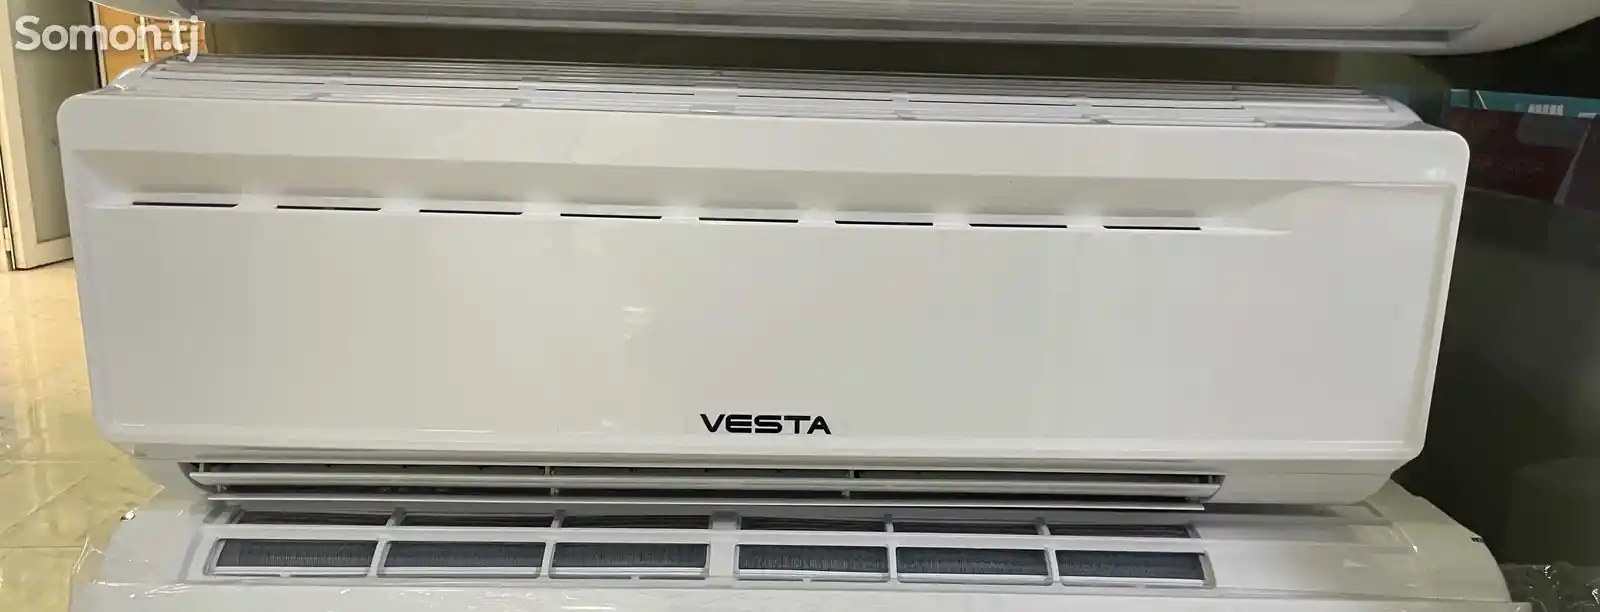 Кондиционер Vesta 12 куб-2